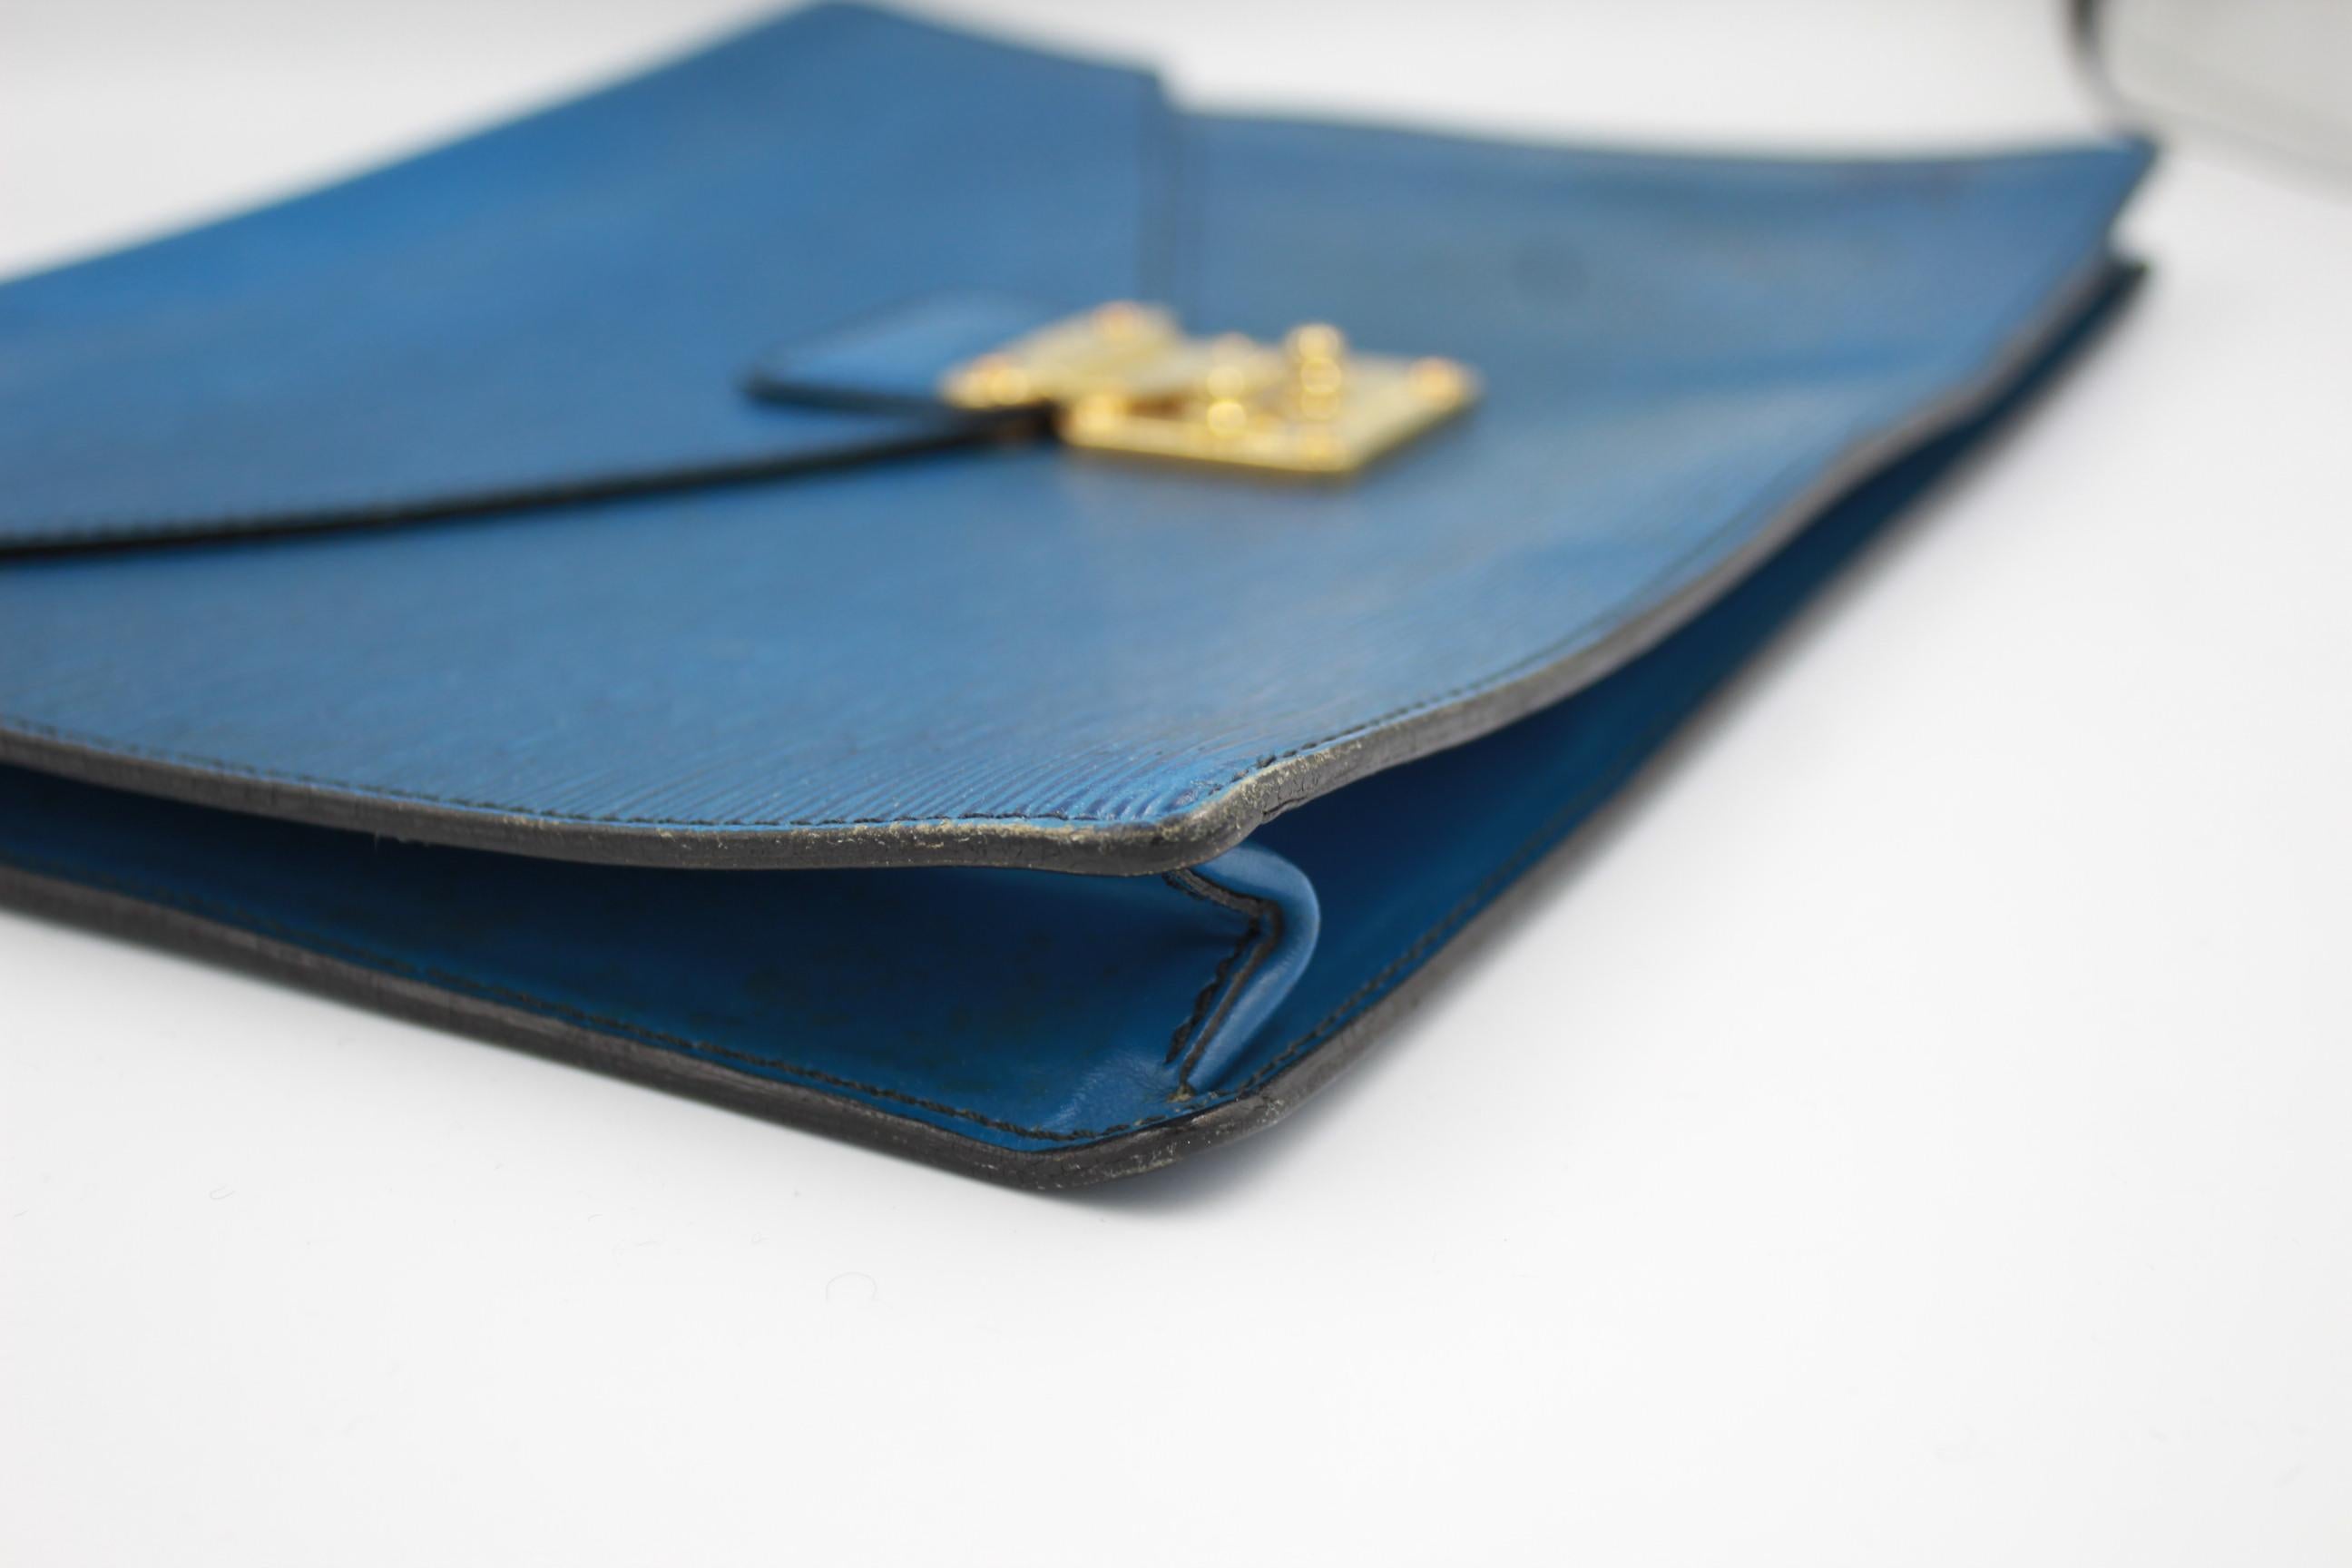 Louis vuitton document pouch in blue épi leather, some sign of wear ( colour spots )
36cm x 28cm x 4cm

